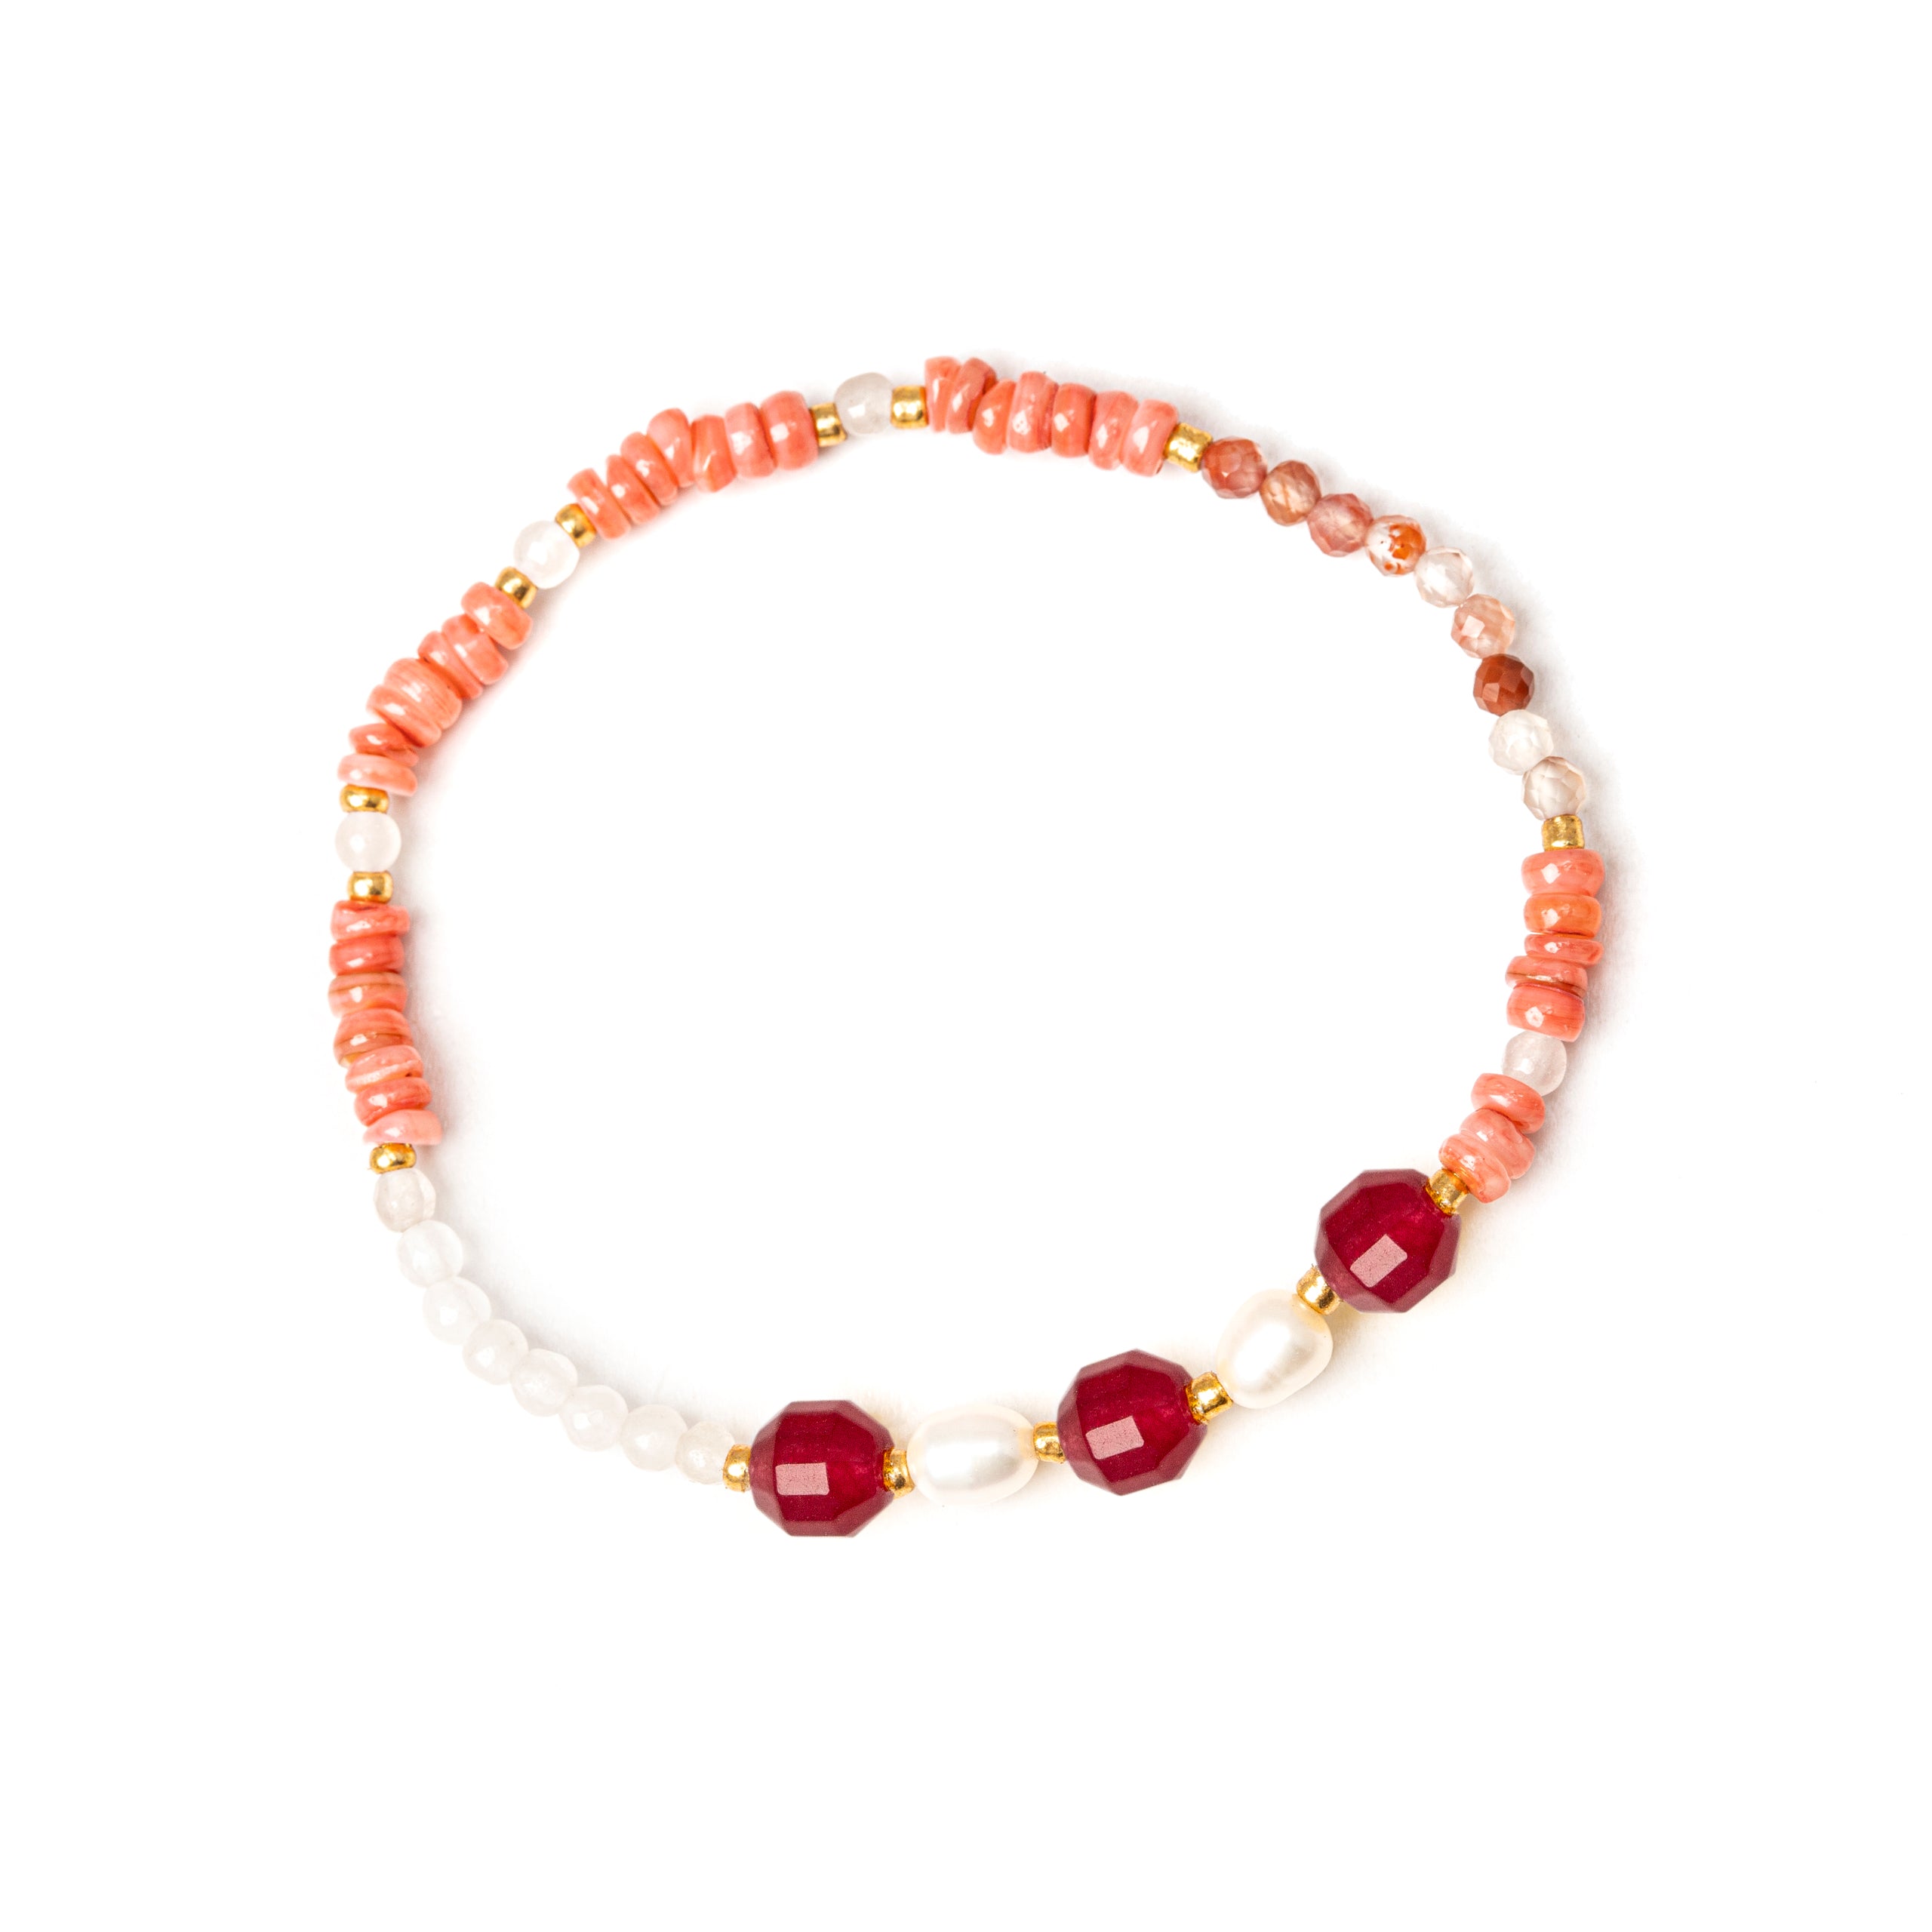 Bracciale elastico, perline, anellini e perle Rio - Rosa - Sodini Bijoux